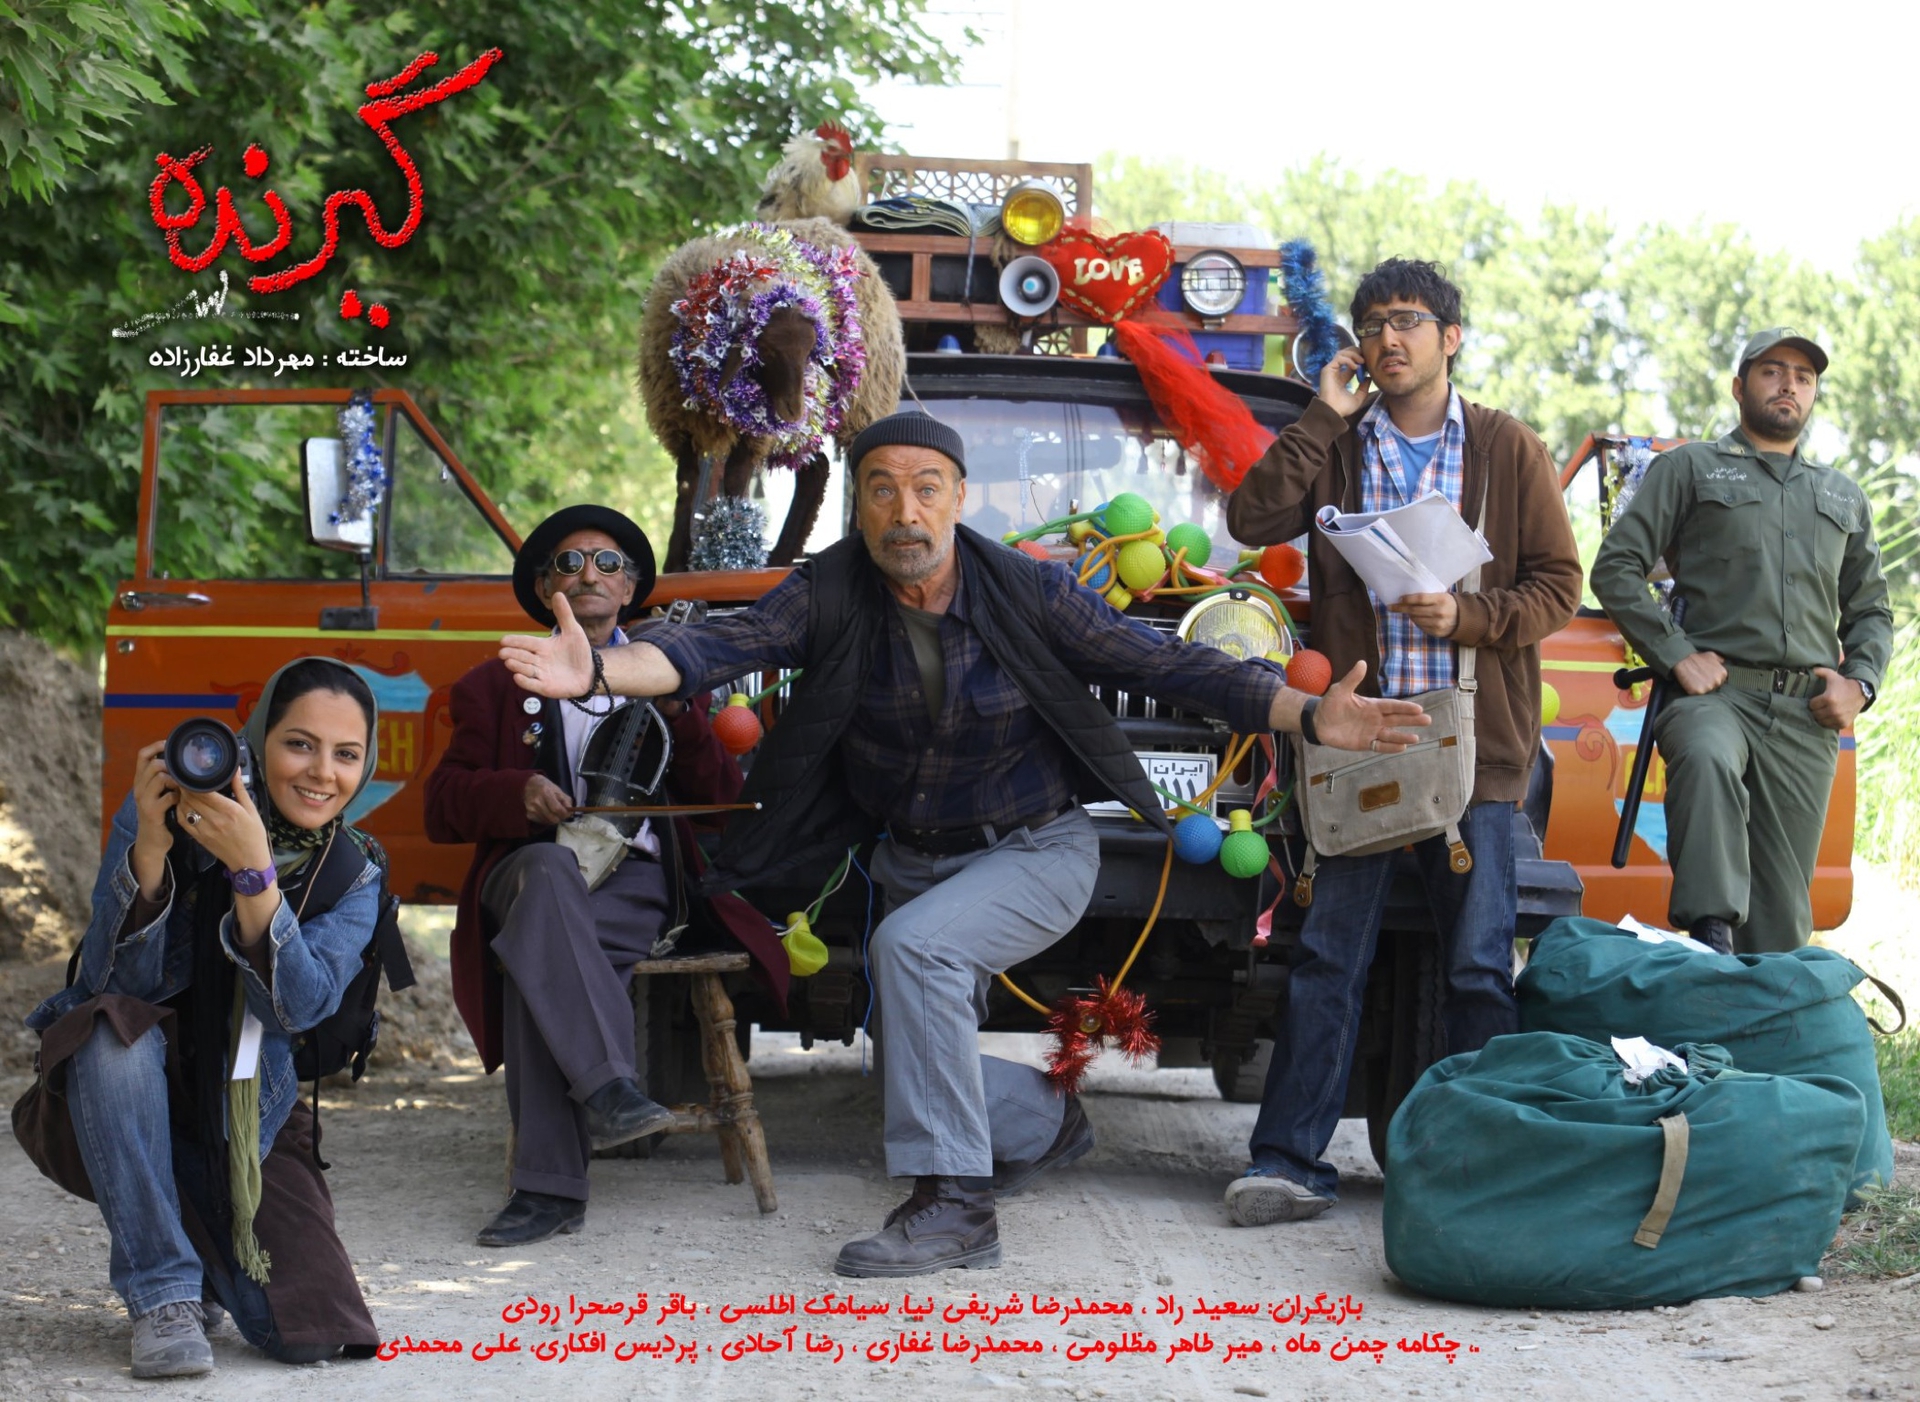 تصویری از علی محمدی، بازیگر و گروه فیلمبرداری سینما و تلویزیون در حال بازیگری سر صحنه یکی از آثارش